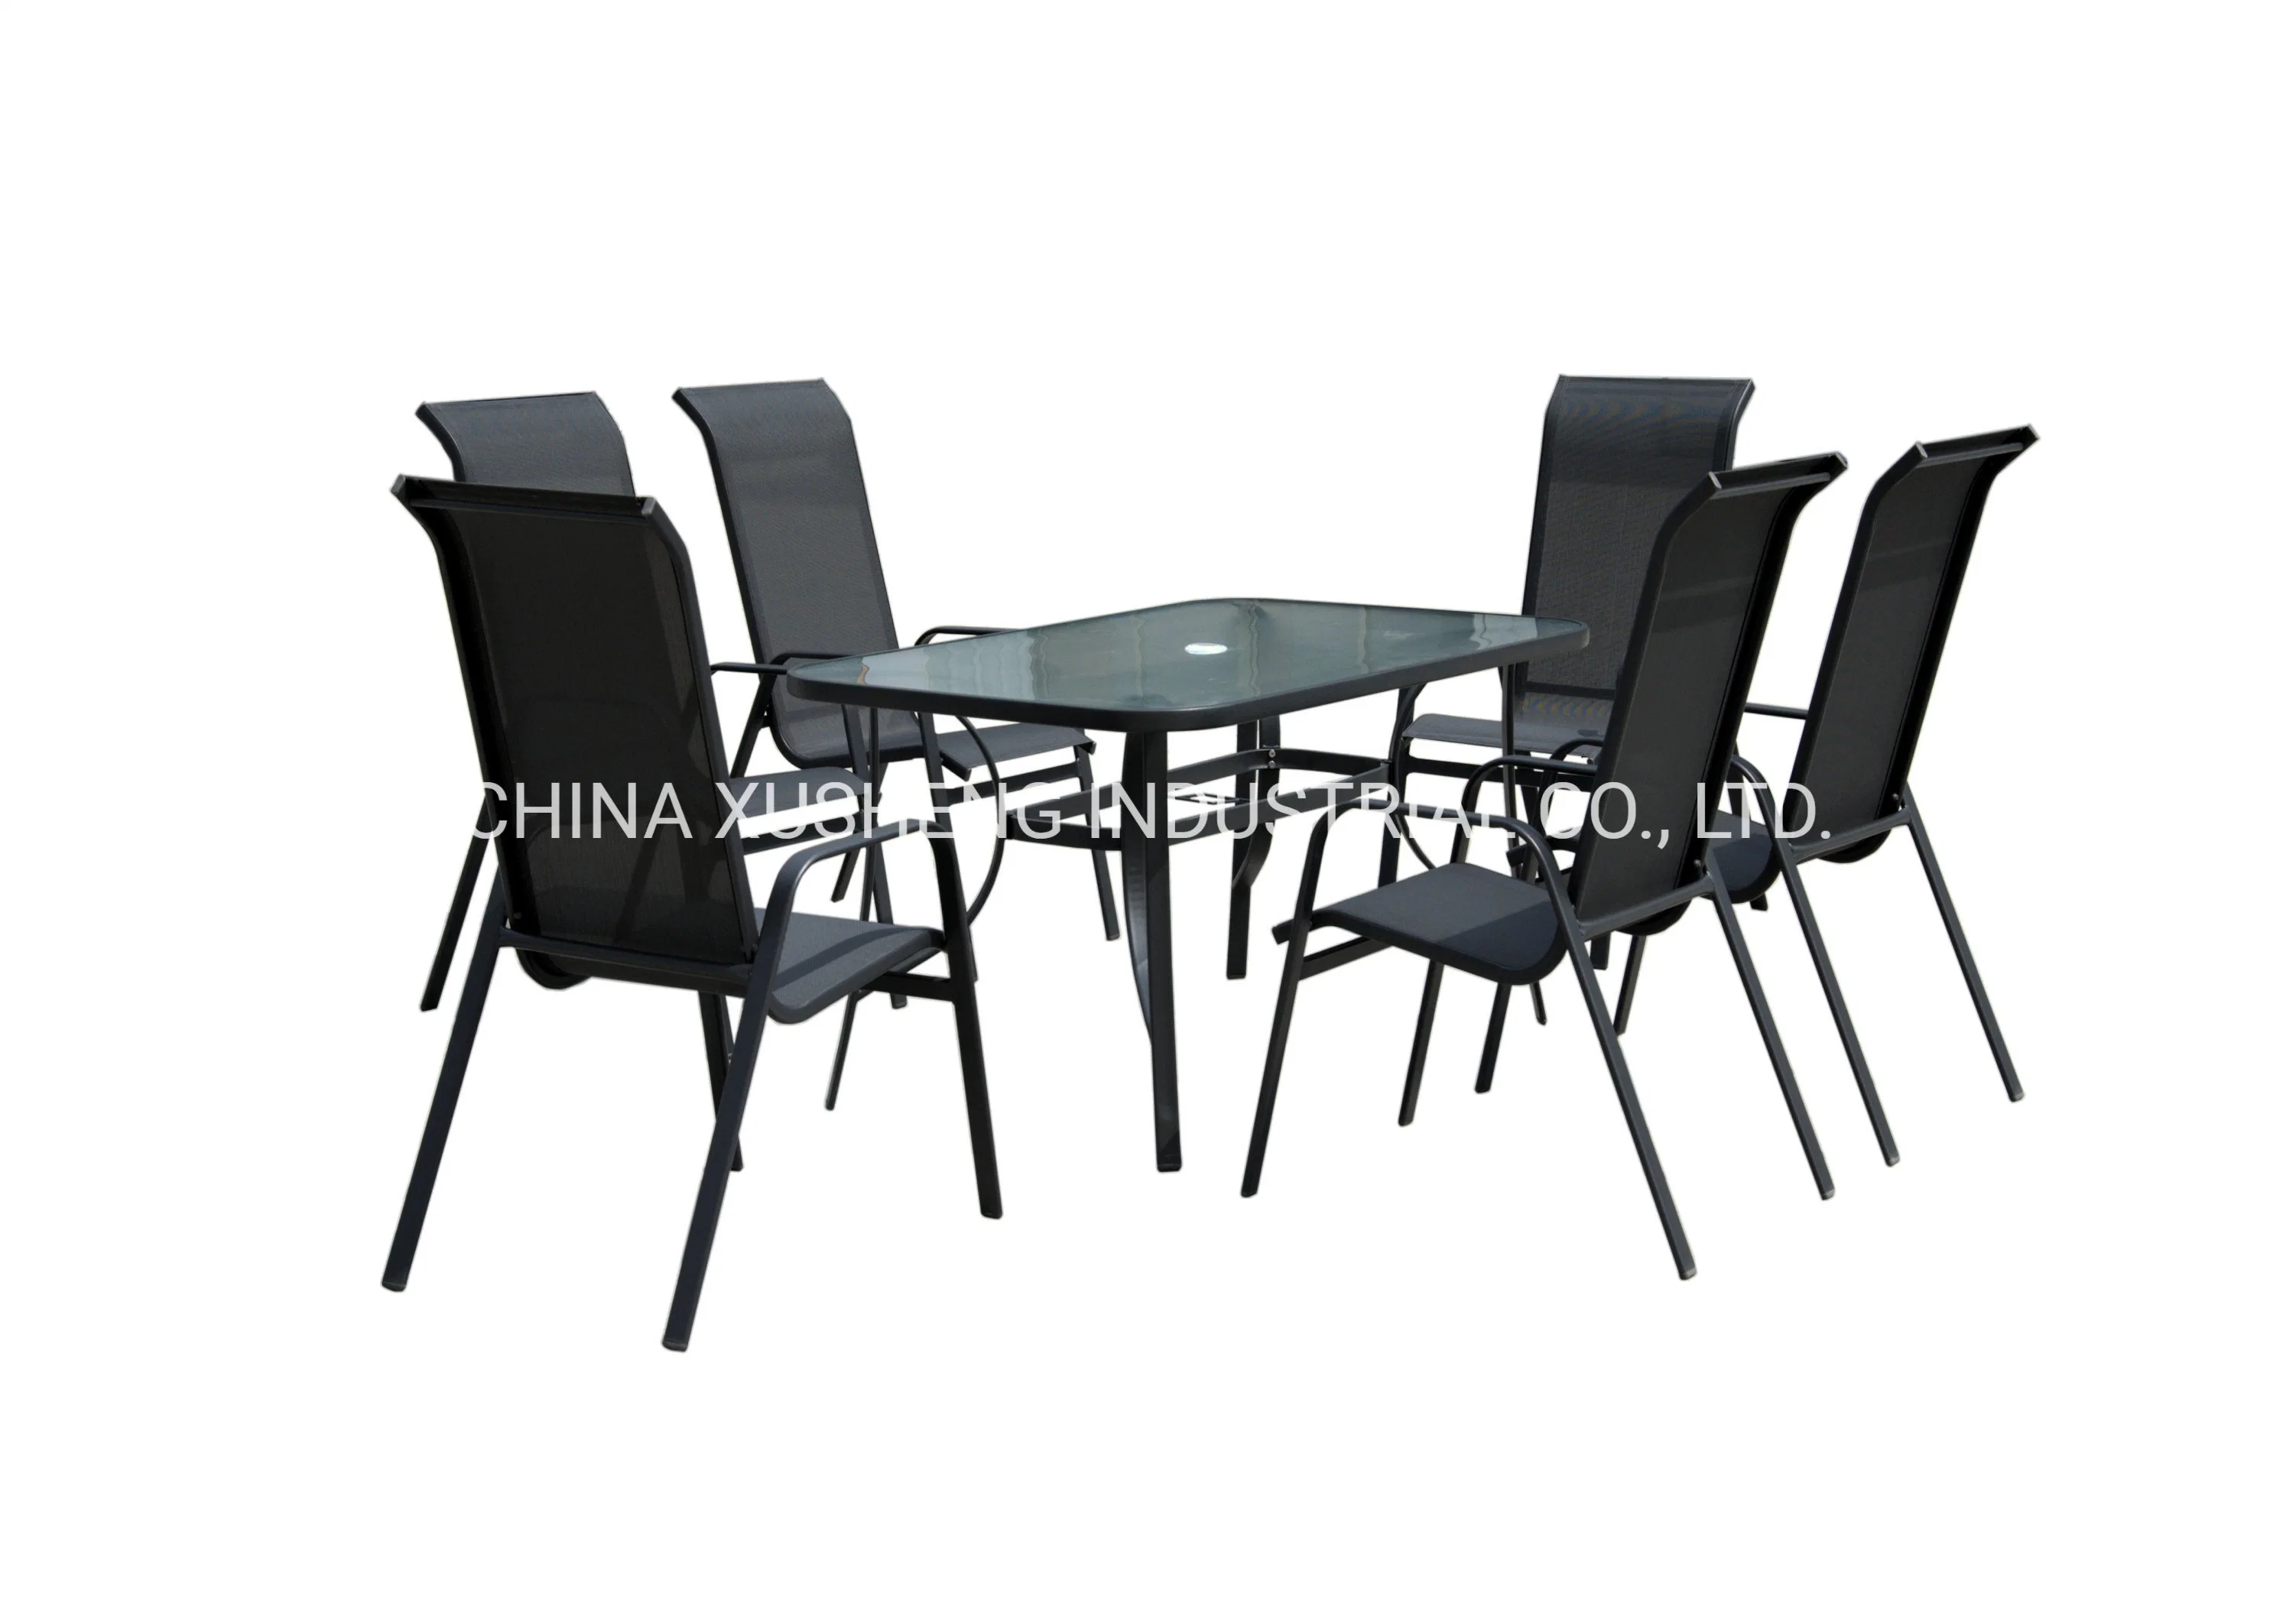 Mesa y sillas de Textilene Jardín Muebles al aire libre Mesa redonda comedor Establecer